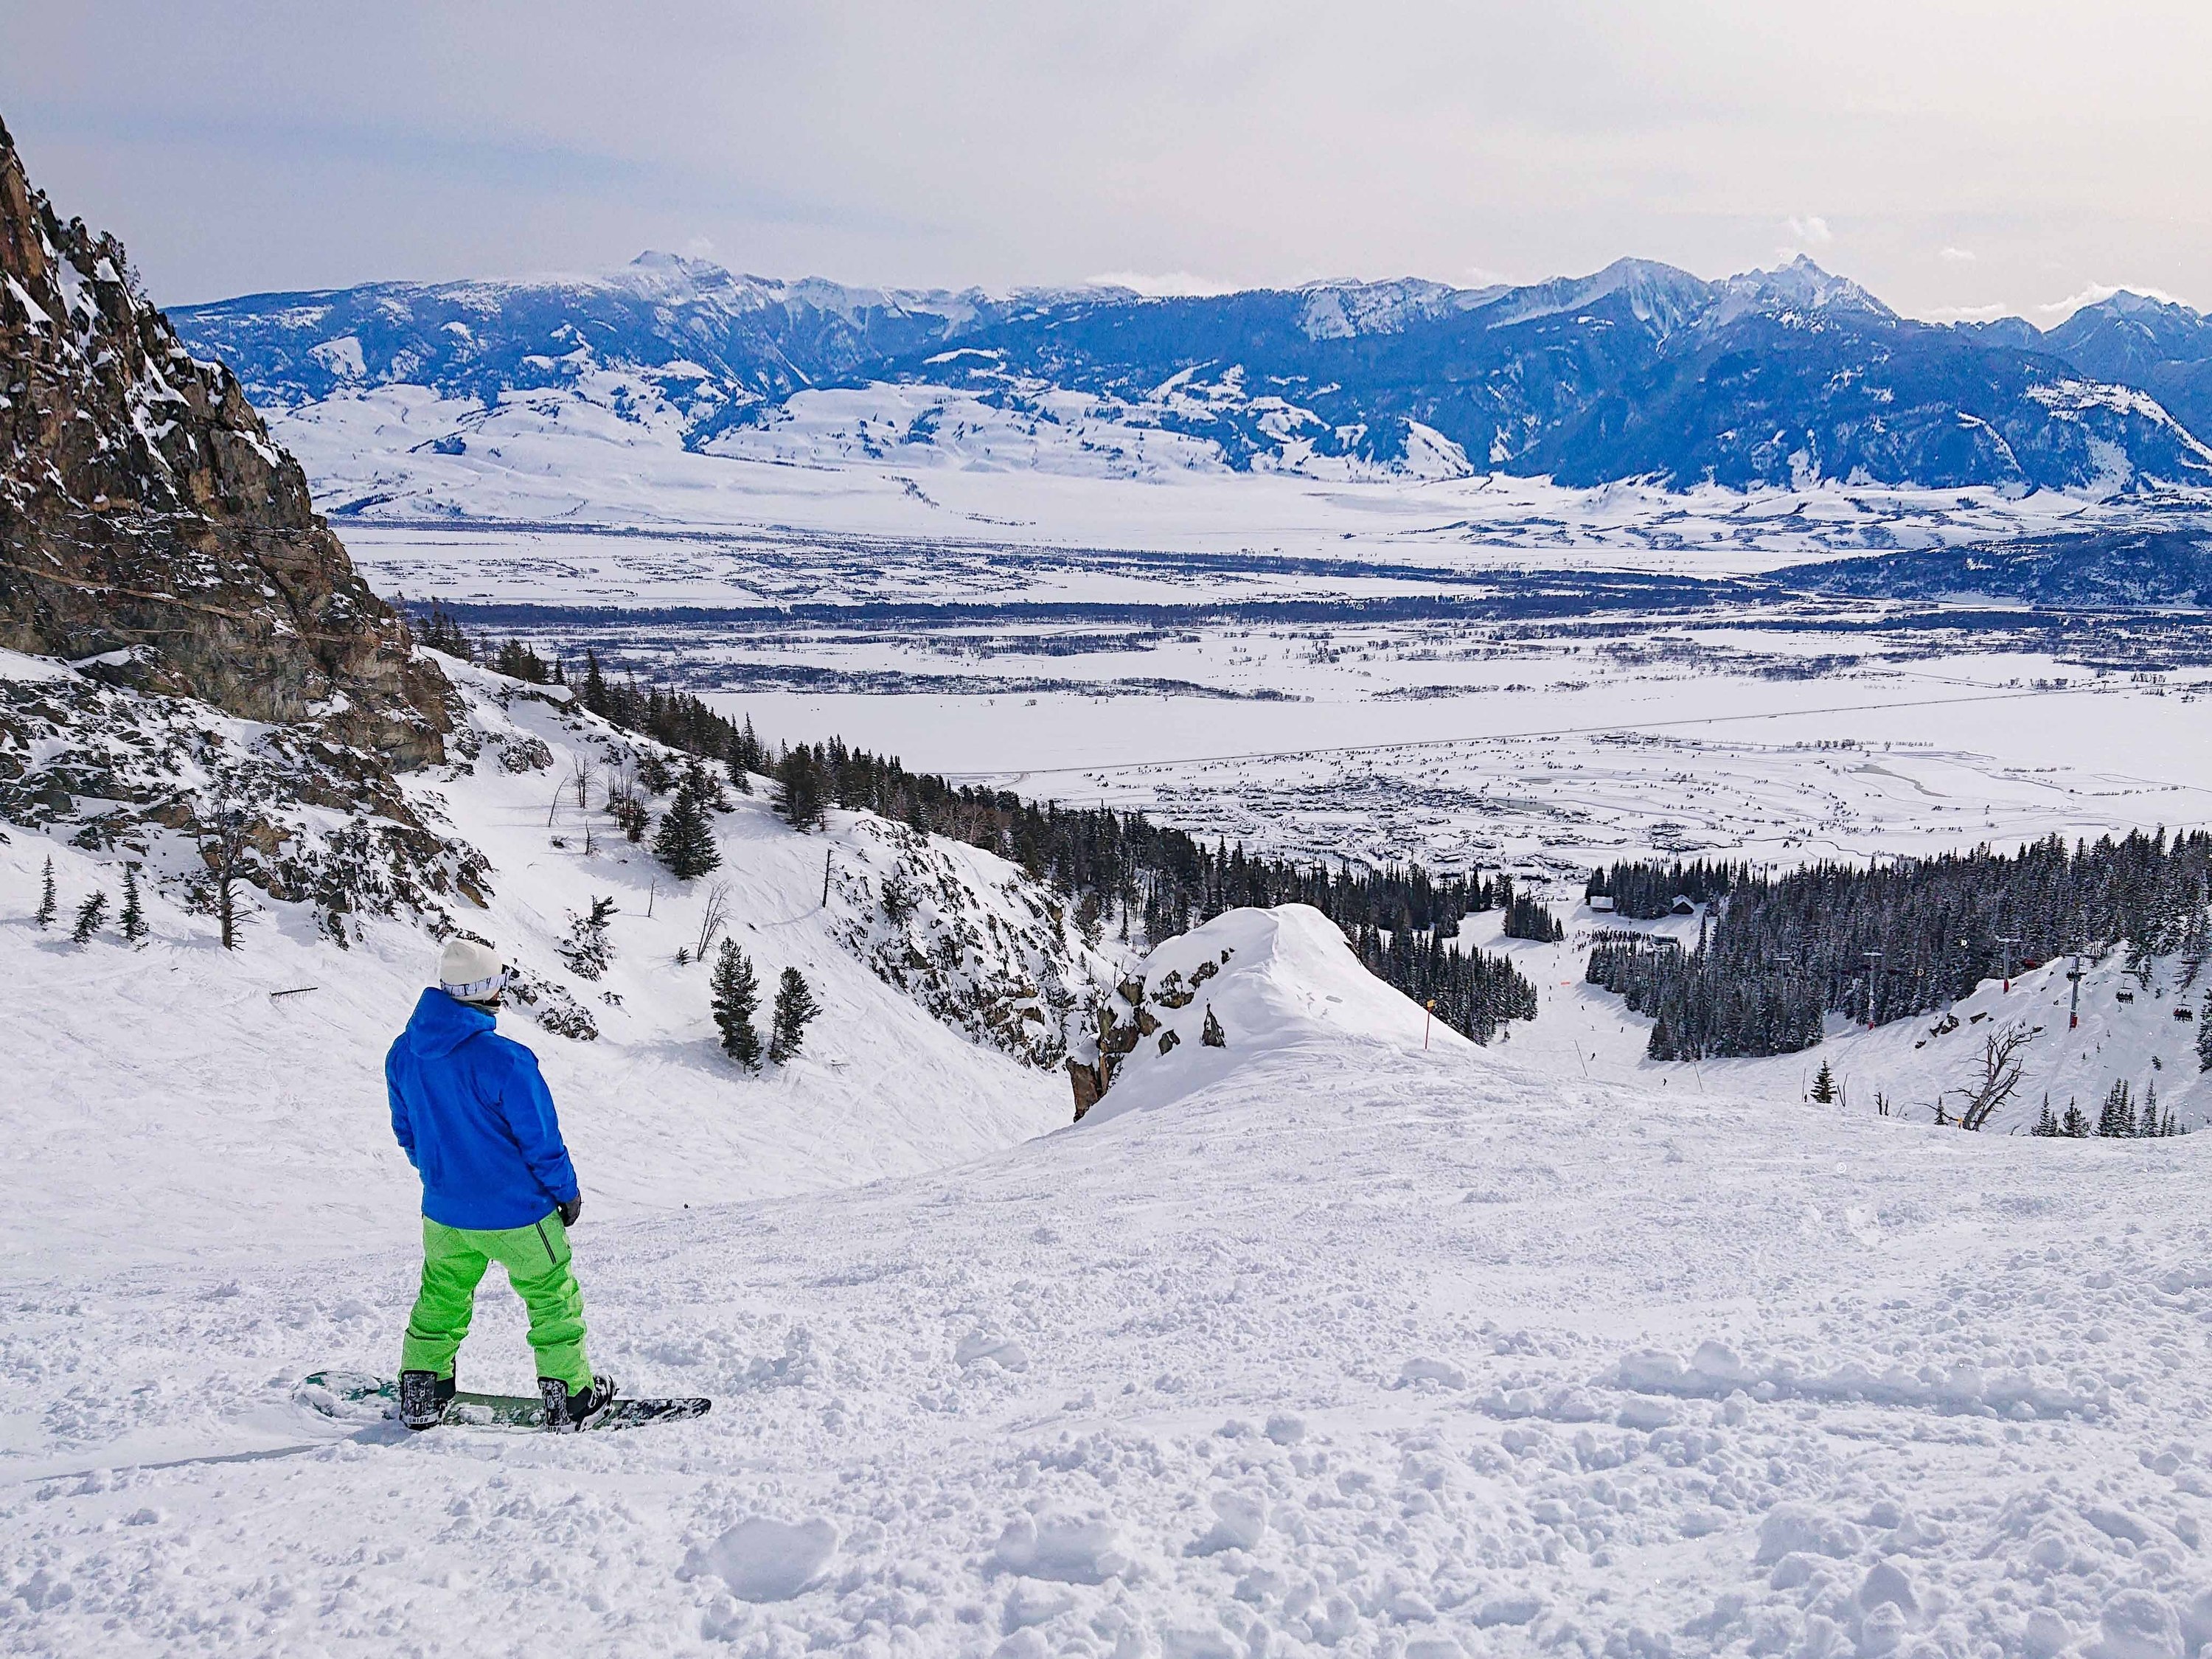 maniac geduldig Om toestemming te geven 20 Best Snowboarding Resorts in the US